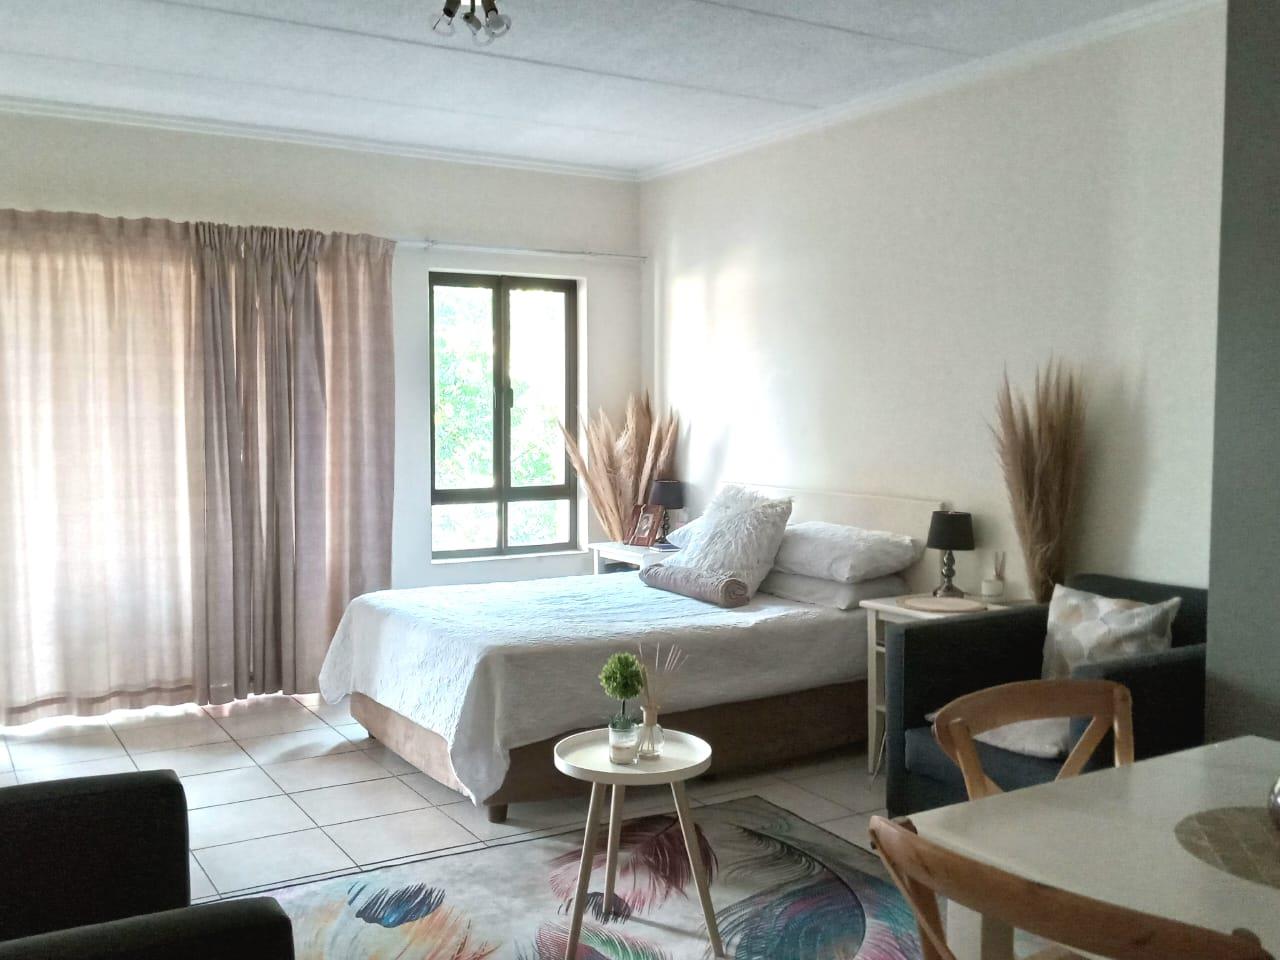 1 Bedroom Property for Sale in Craigavon Gauteng